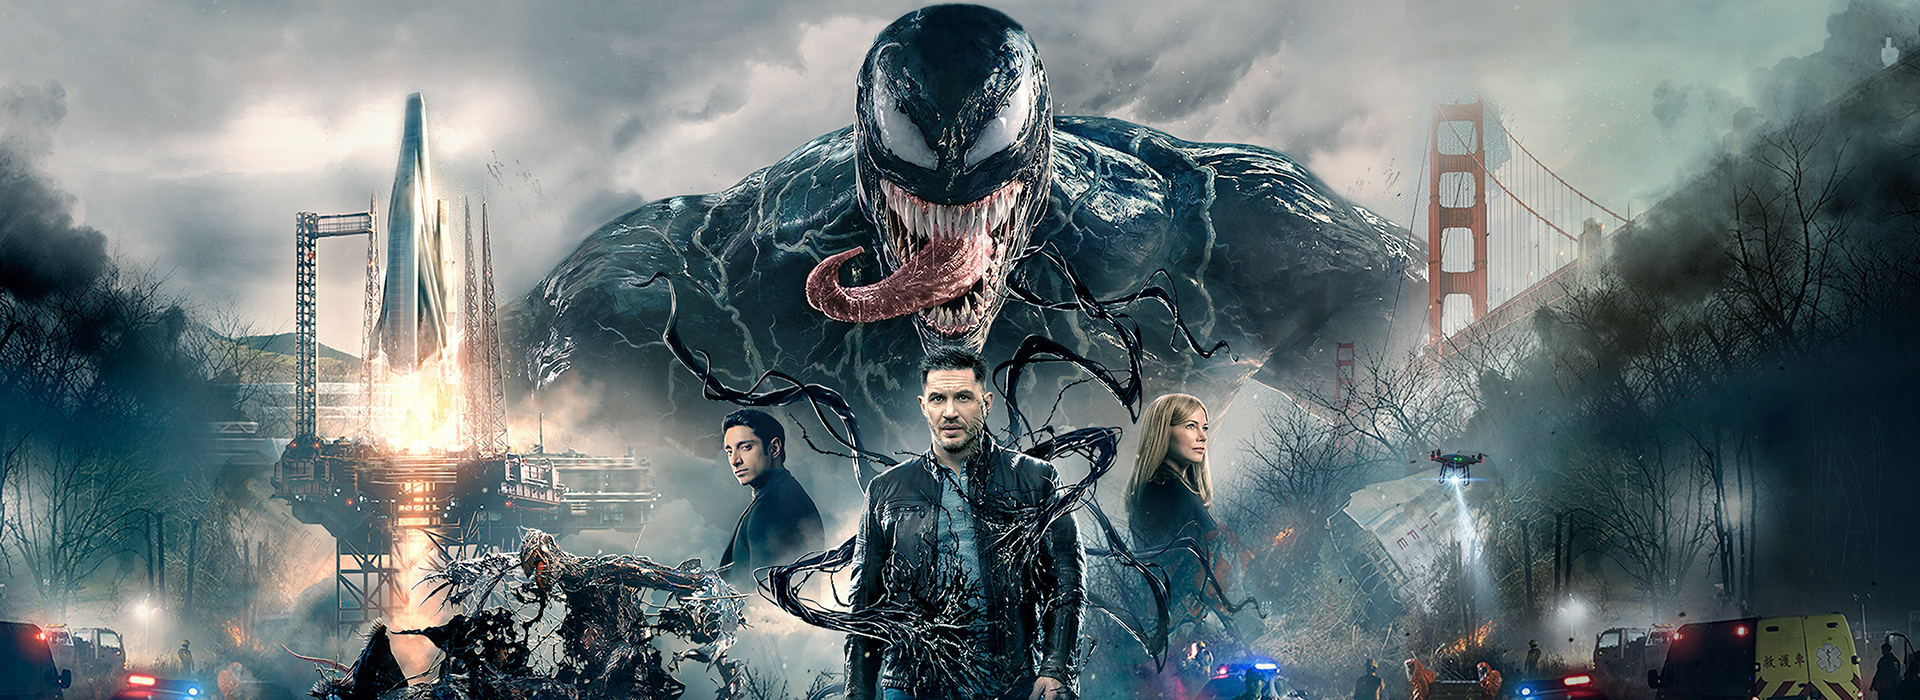 Movie poster Venom